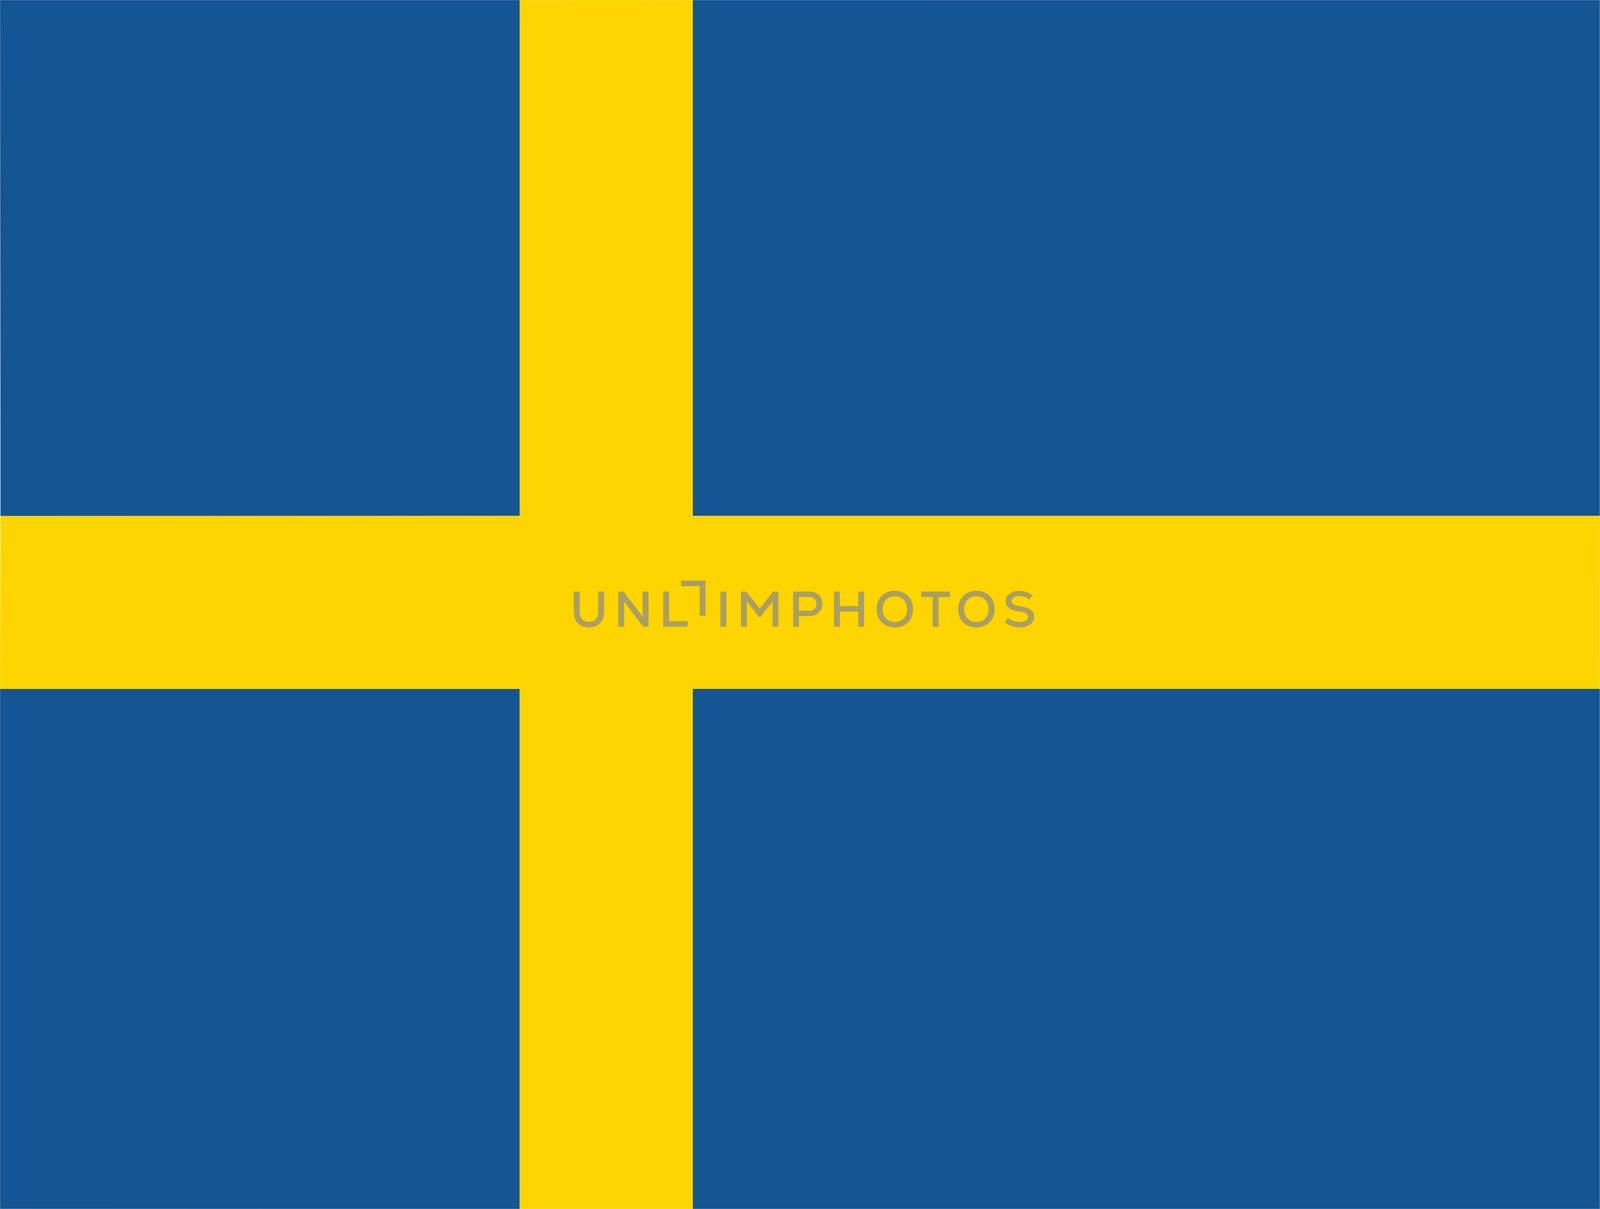 2D illustration of the flag of sweden